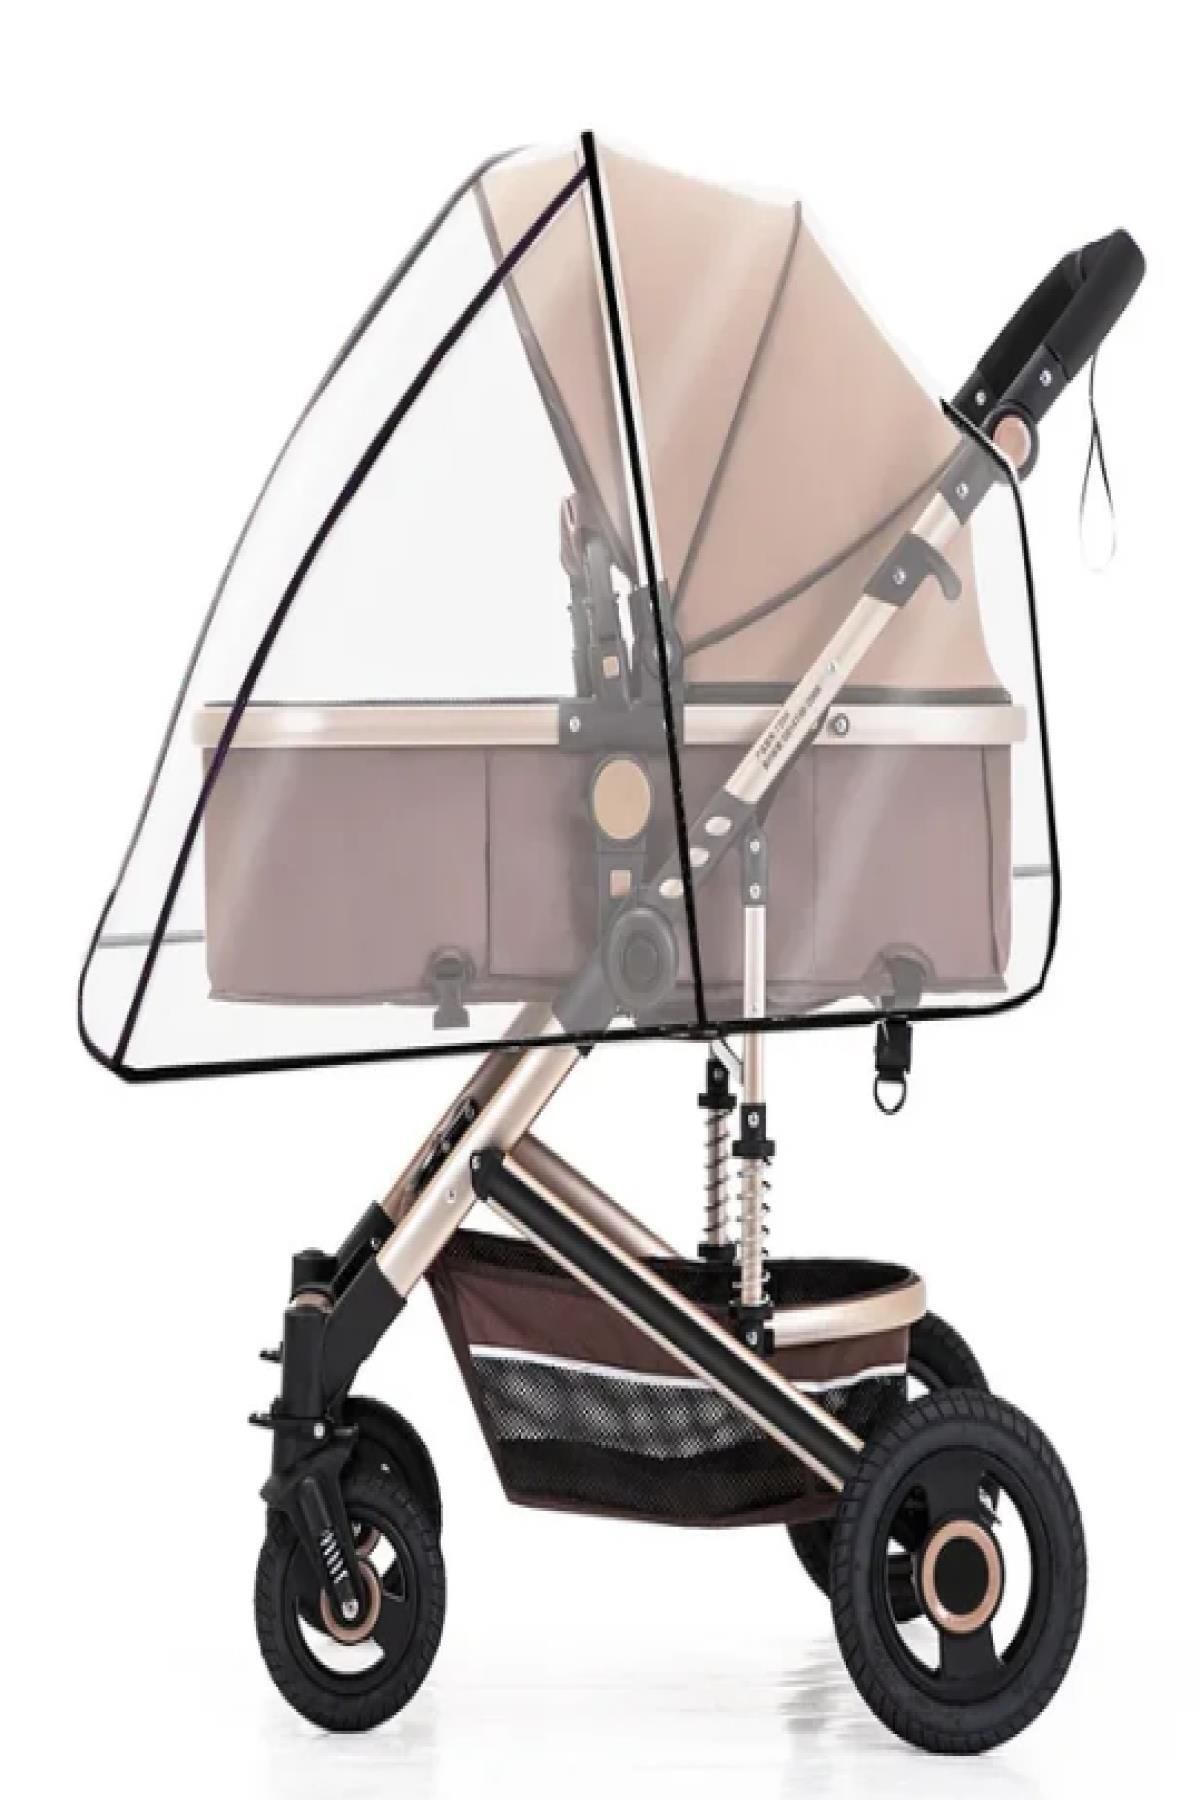 MasterCar Lüks Geçmeli Lastikli Bebek Arabası Yağmurluğu ( Tüm Bebek Arabası Modelleri İle Uyumludur )